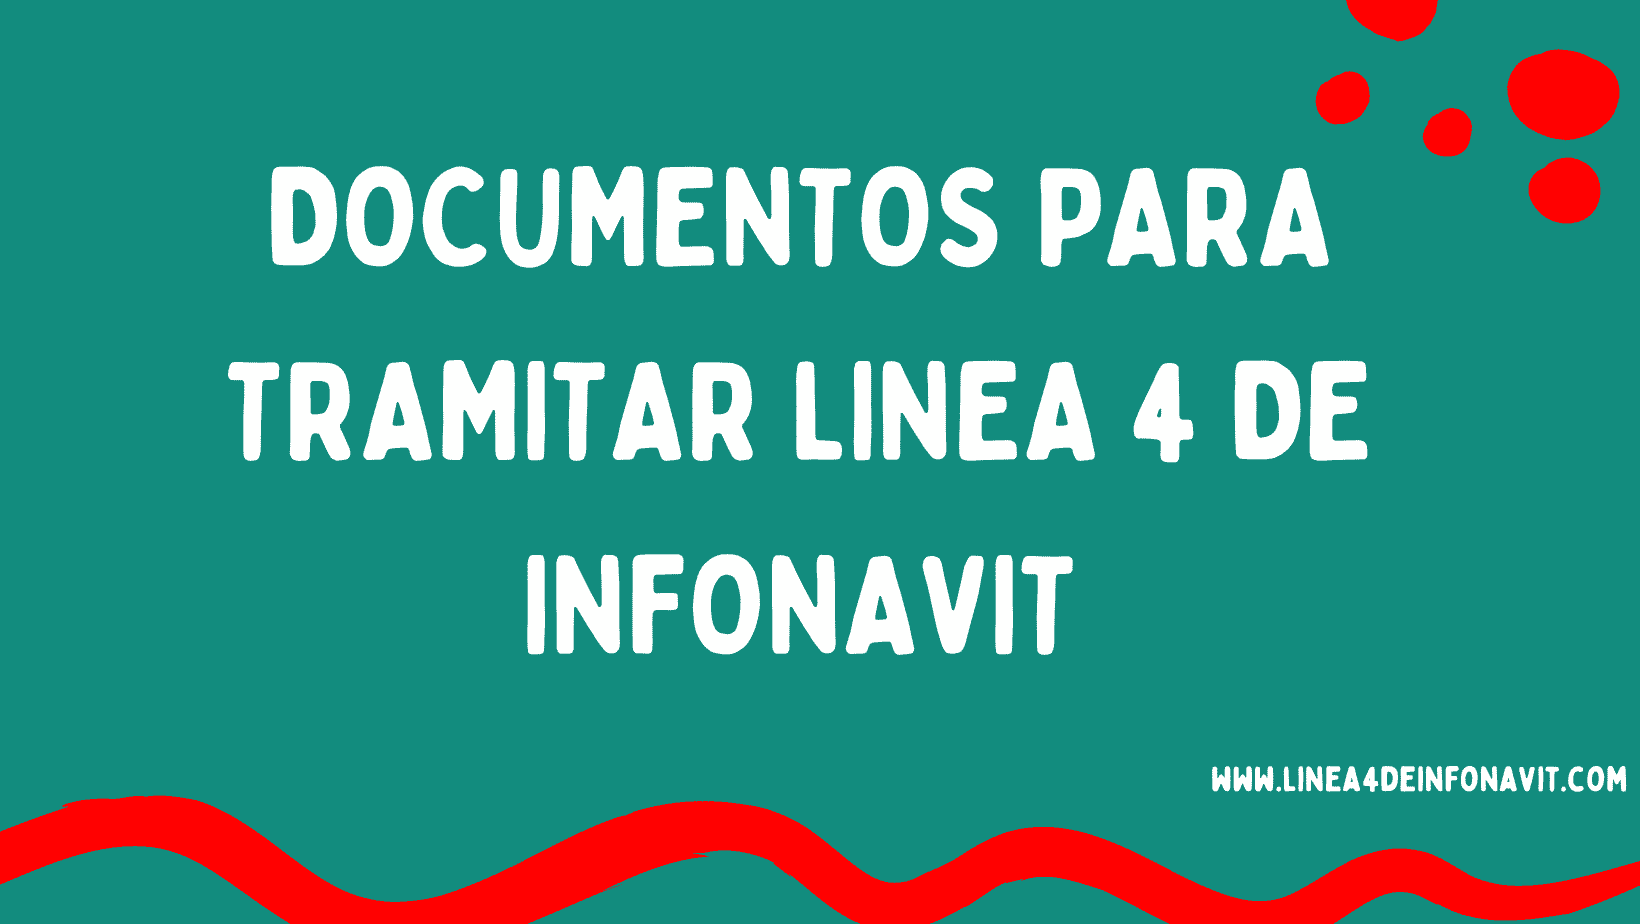 Copia de PLantilla linea 4 infonavit 2 1 • Linea 4 INFONAVIT